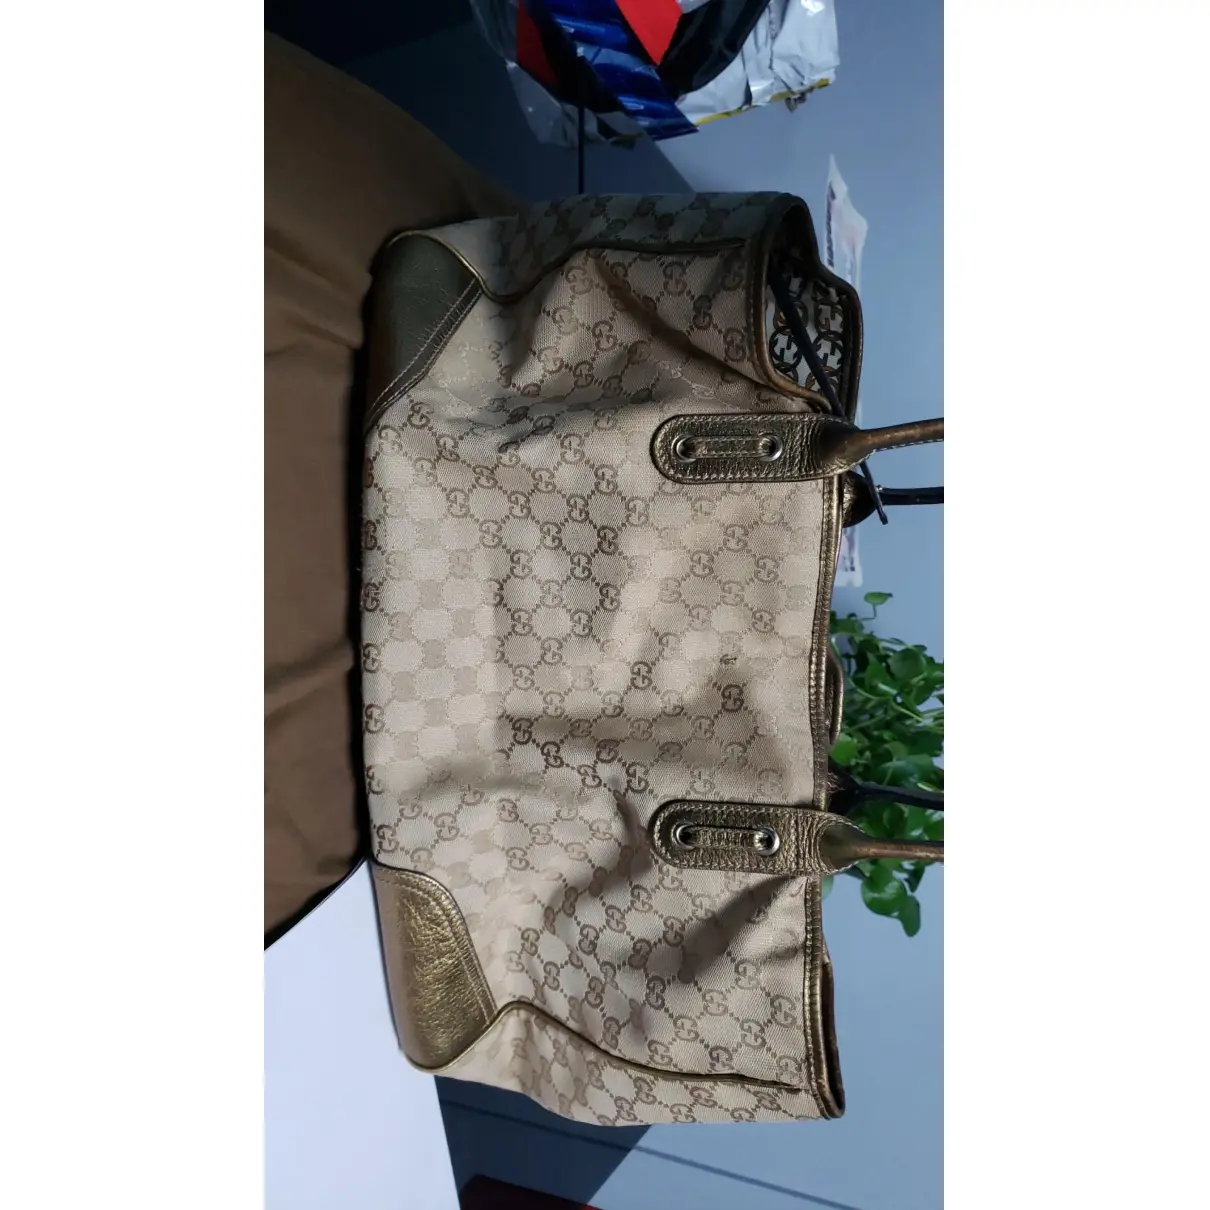 Princy cloth handbag Gucci